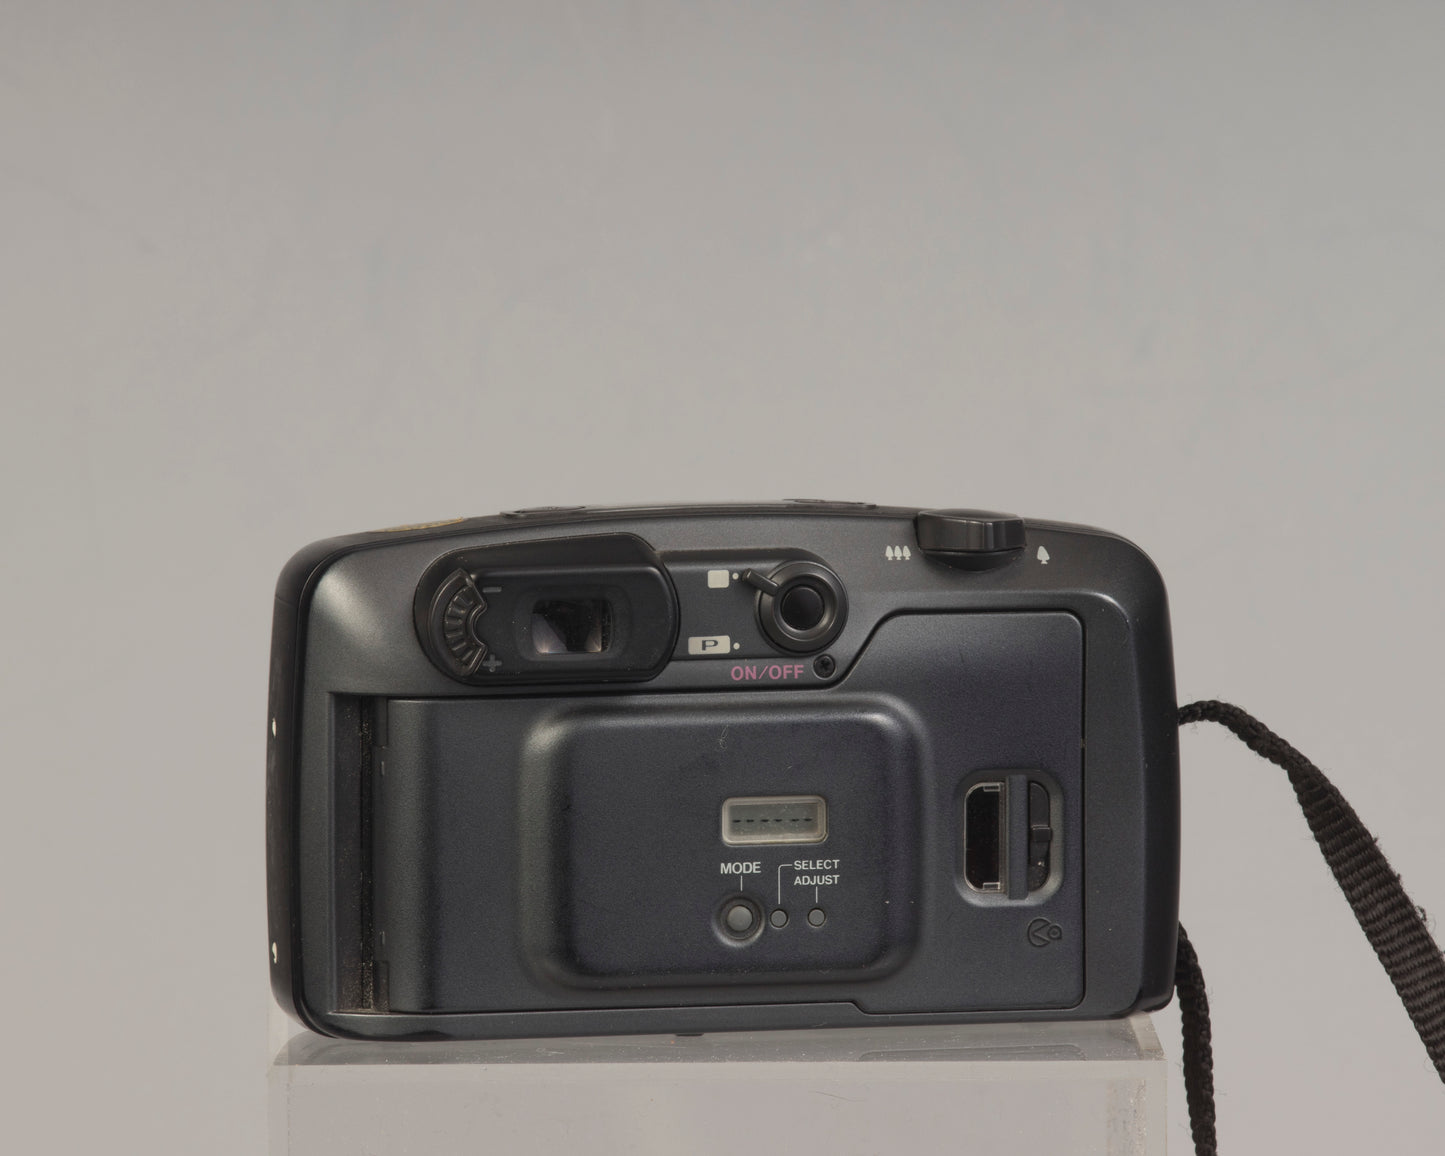 Pentax Espio 140 35mm camera